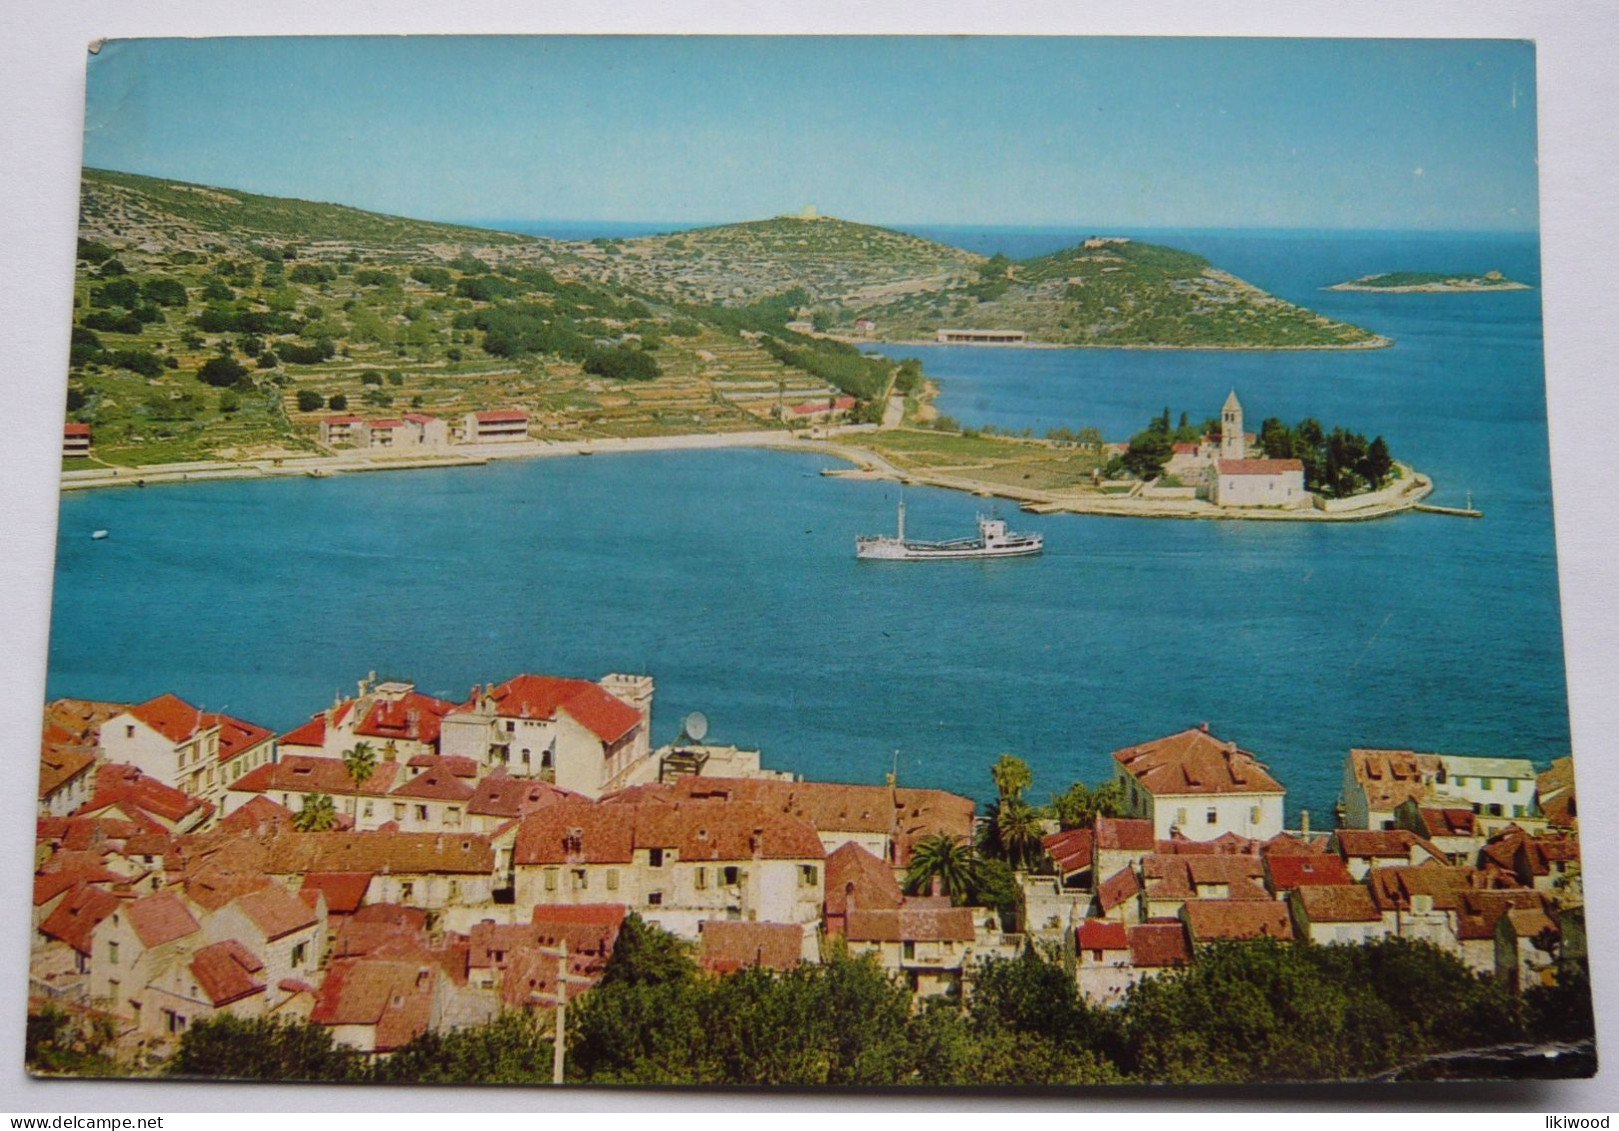 Otok Vis (Island Vis) - Croatia